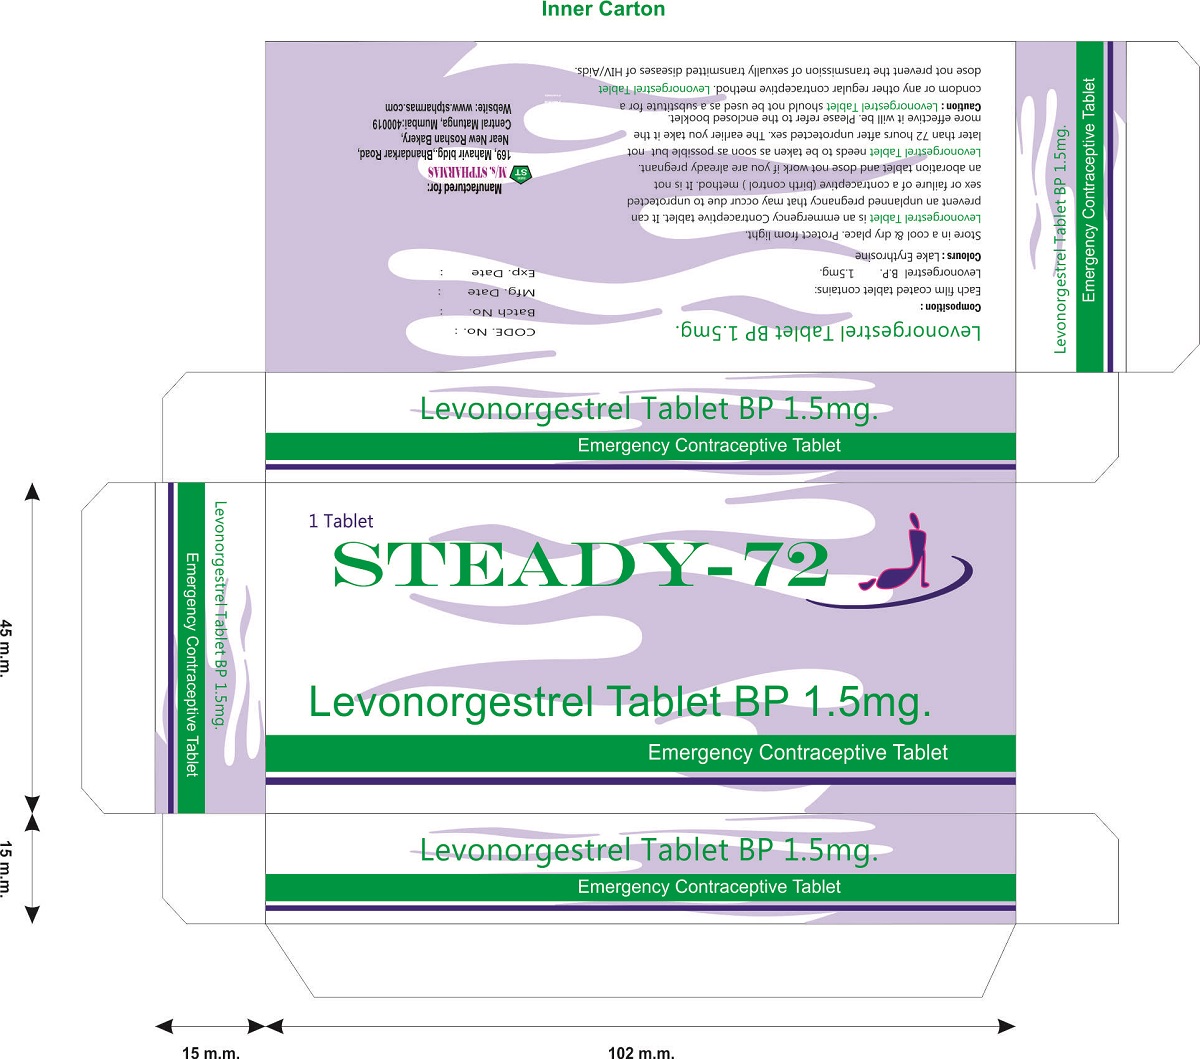 STEADY-72